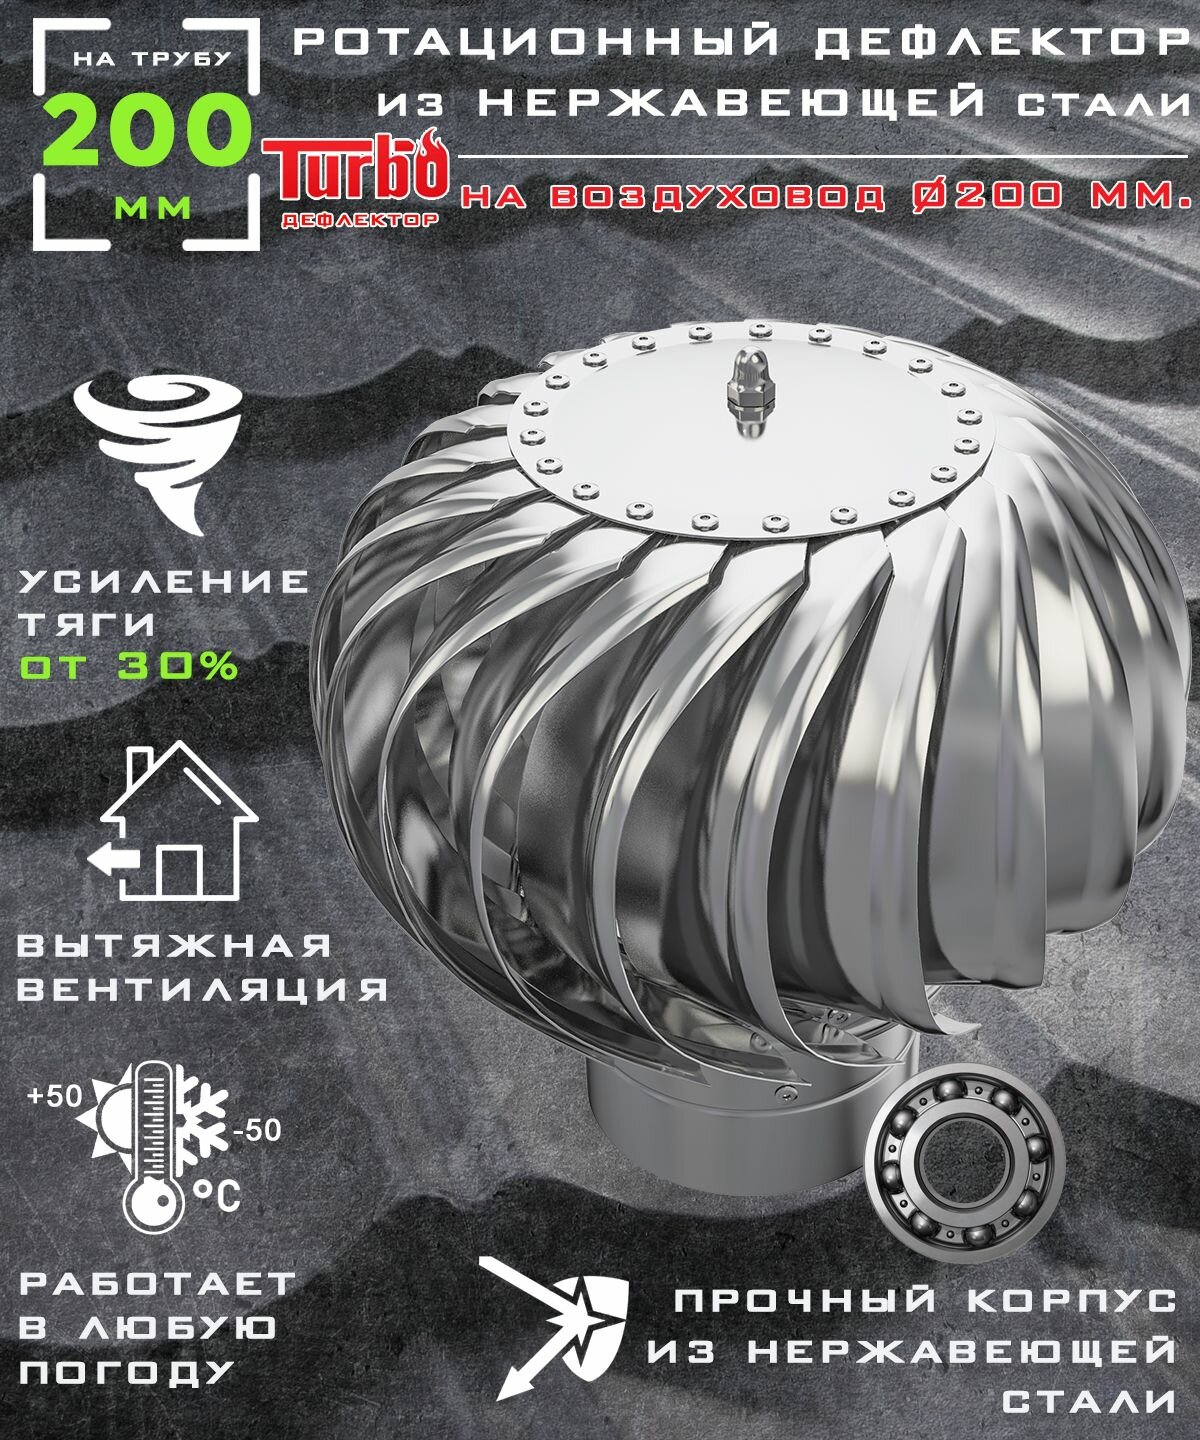 Ротационный дефлектор ТД 200н /турбодефлектор/ D200 нержавеющая сталь